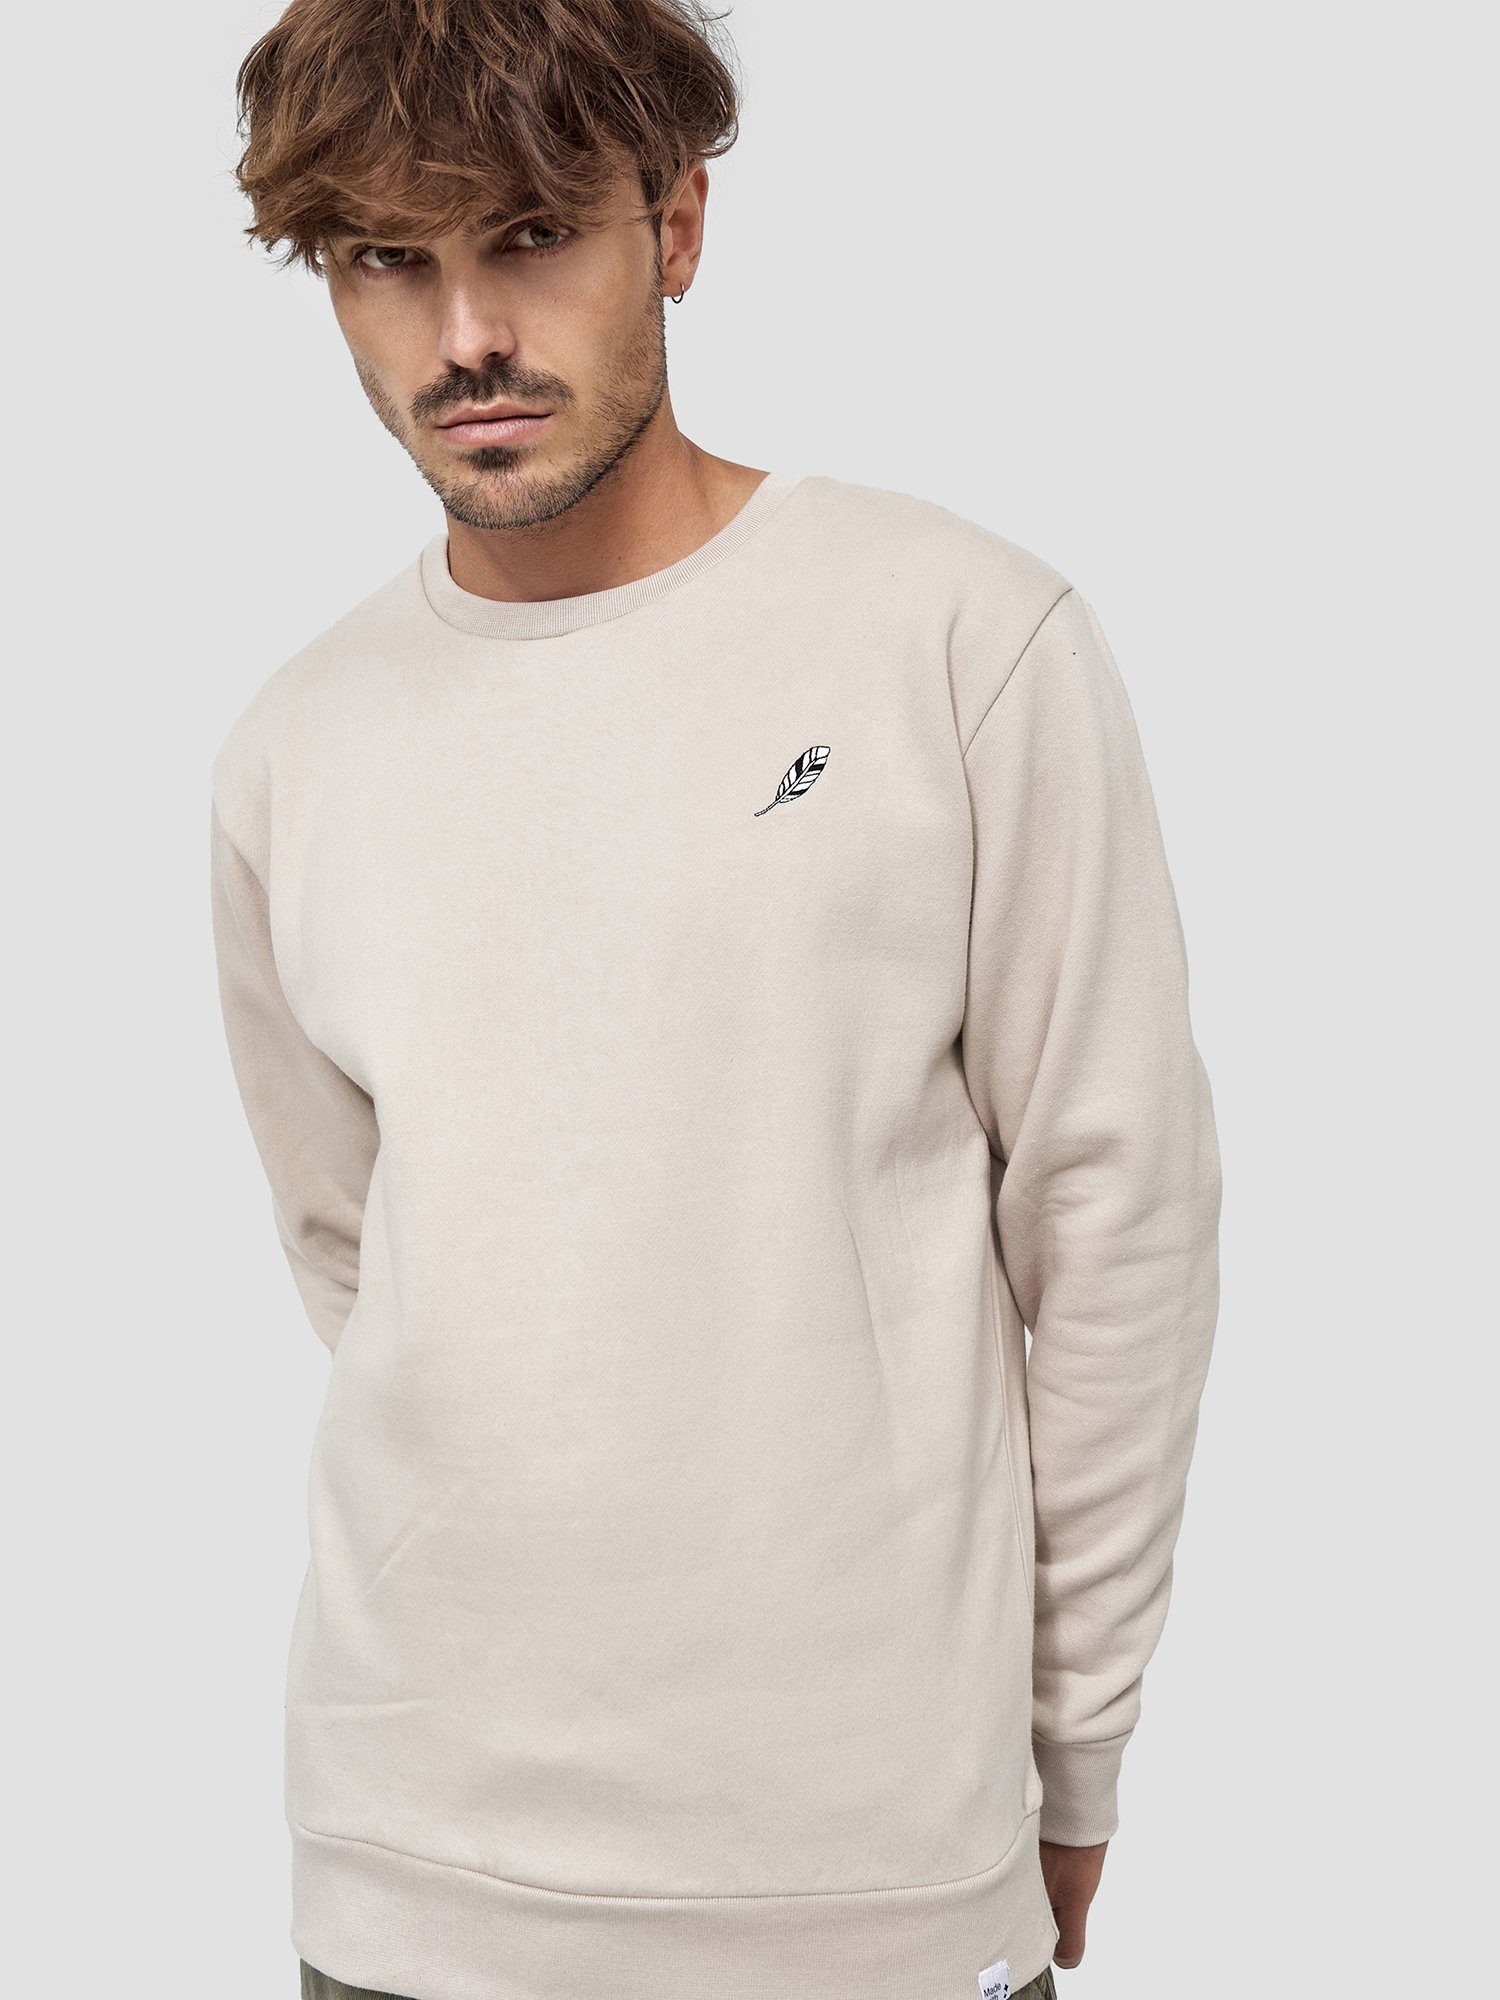 zertifizierte Sweatshirt Feder GOTS MIKON Beige Bio-Baumwolle